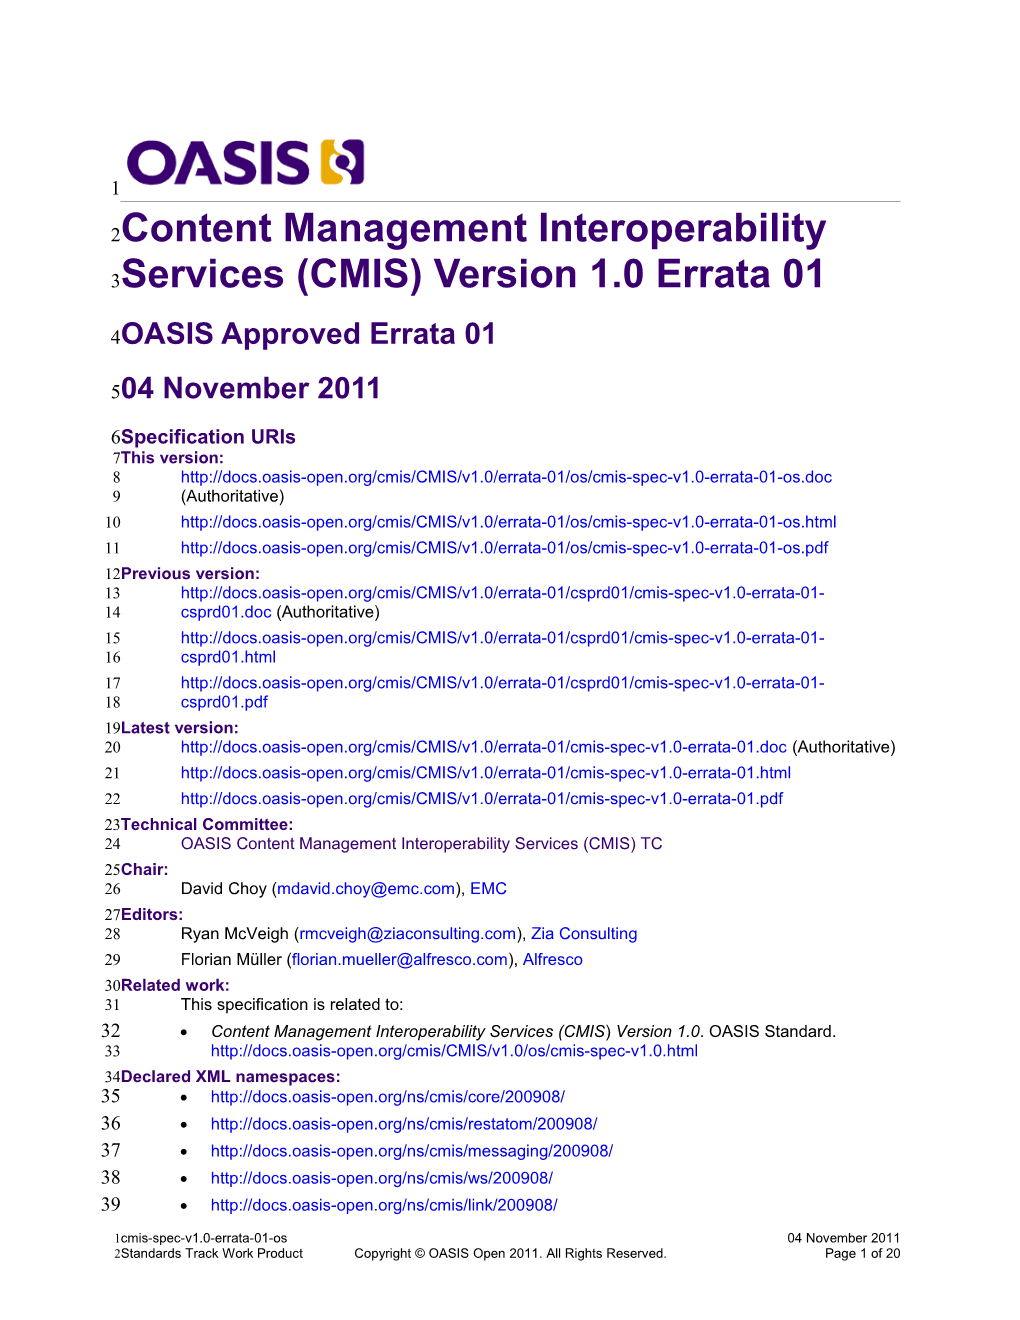 Content Management Interoperability Services (CMIS) Version 1.0 Errata 01